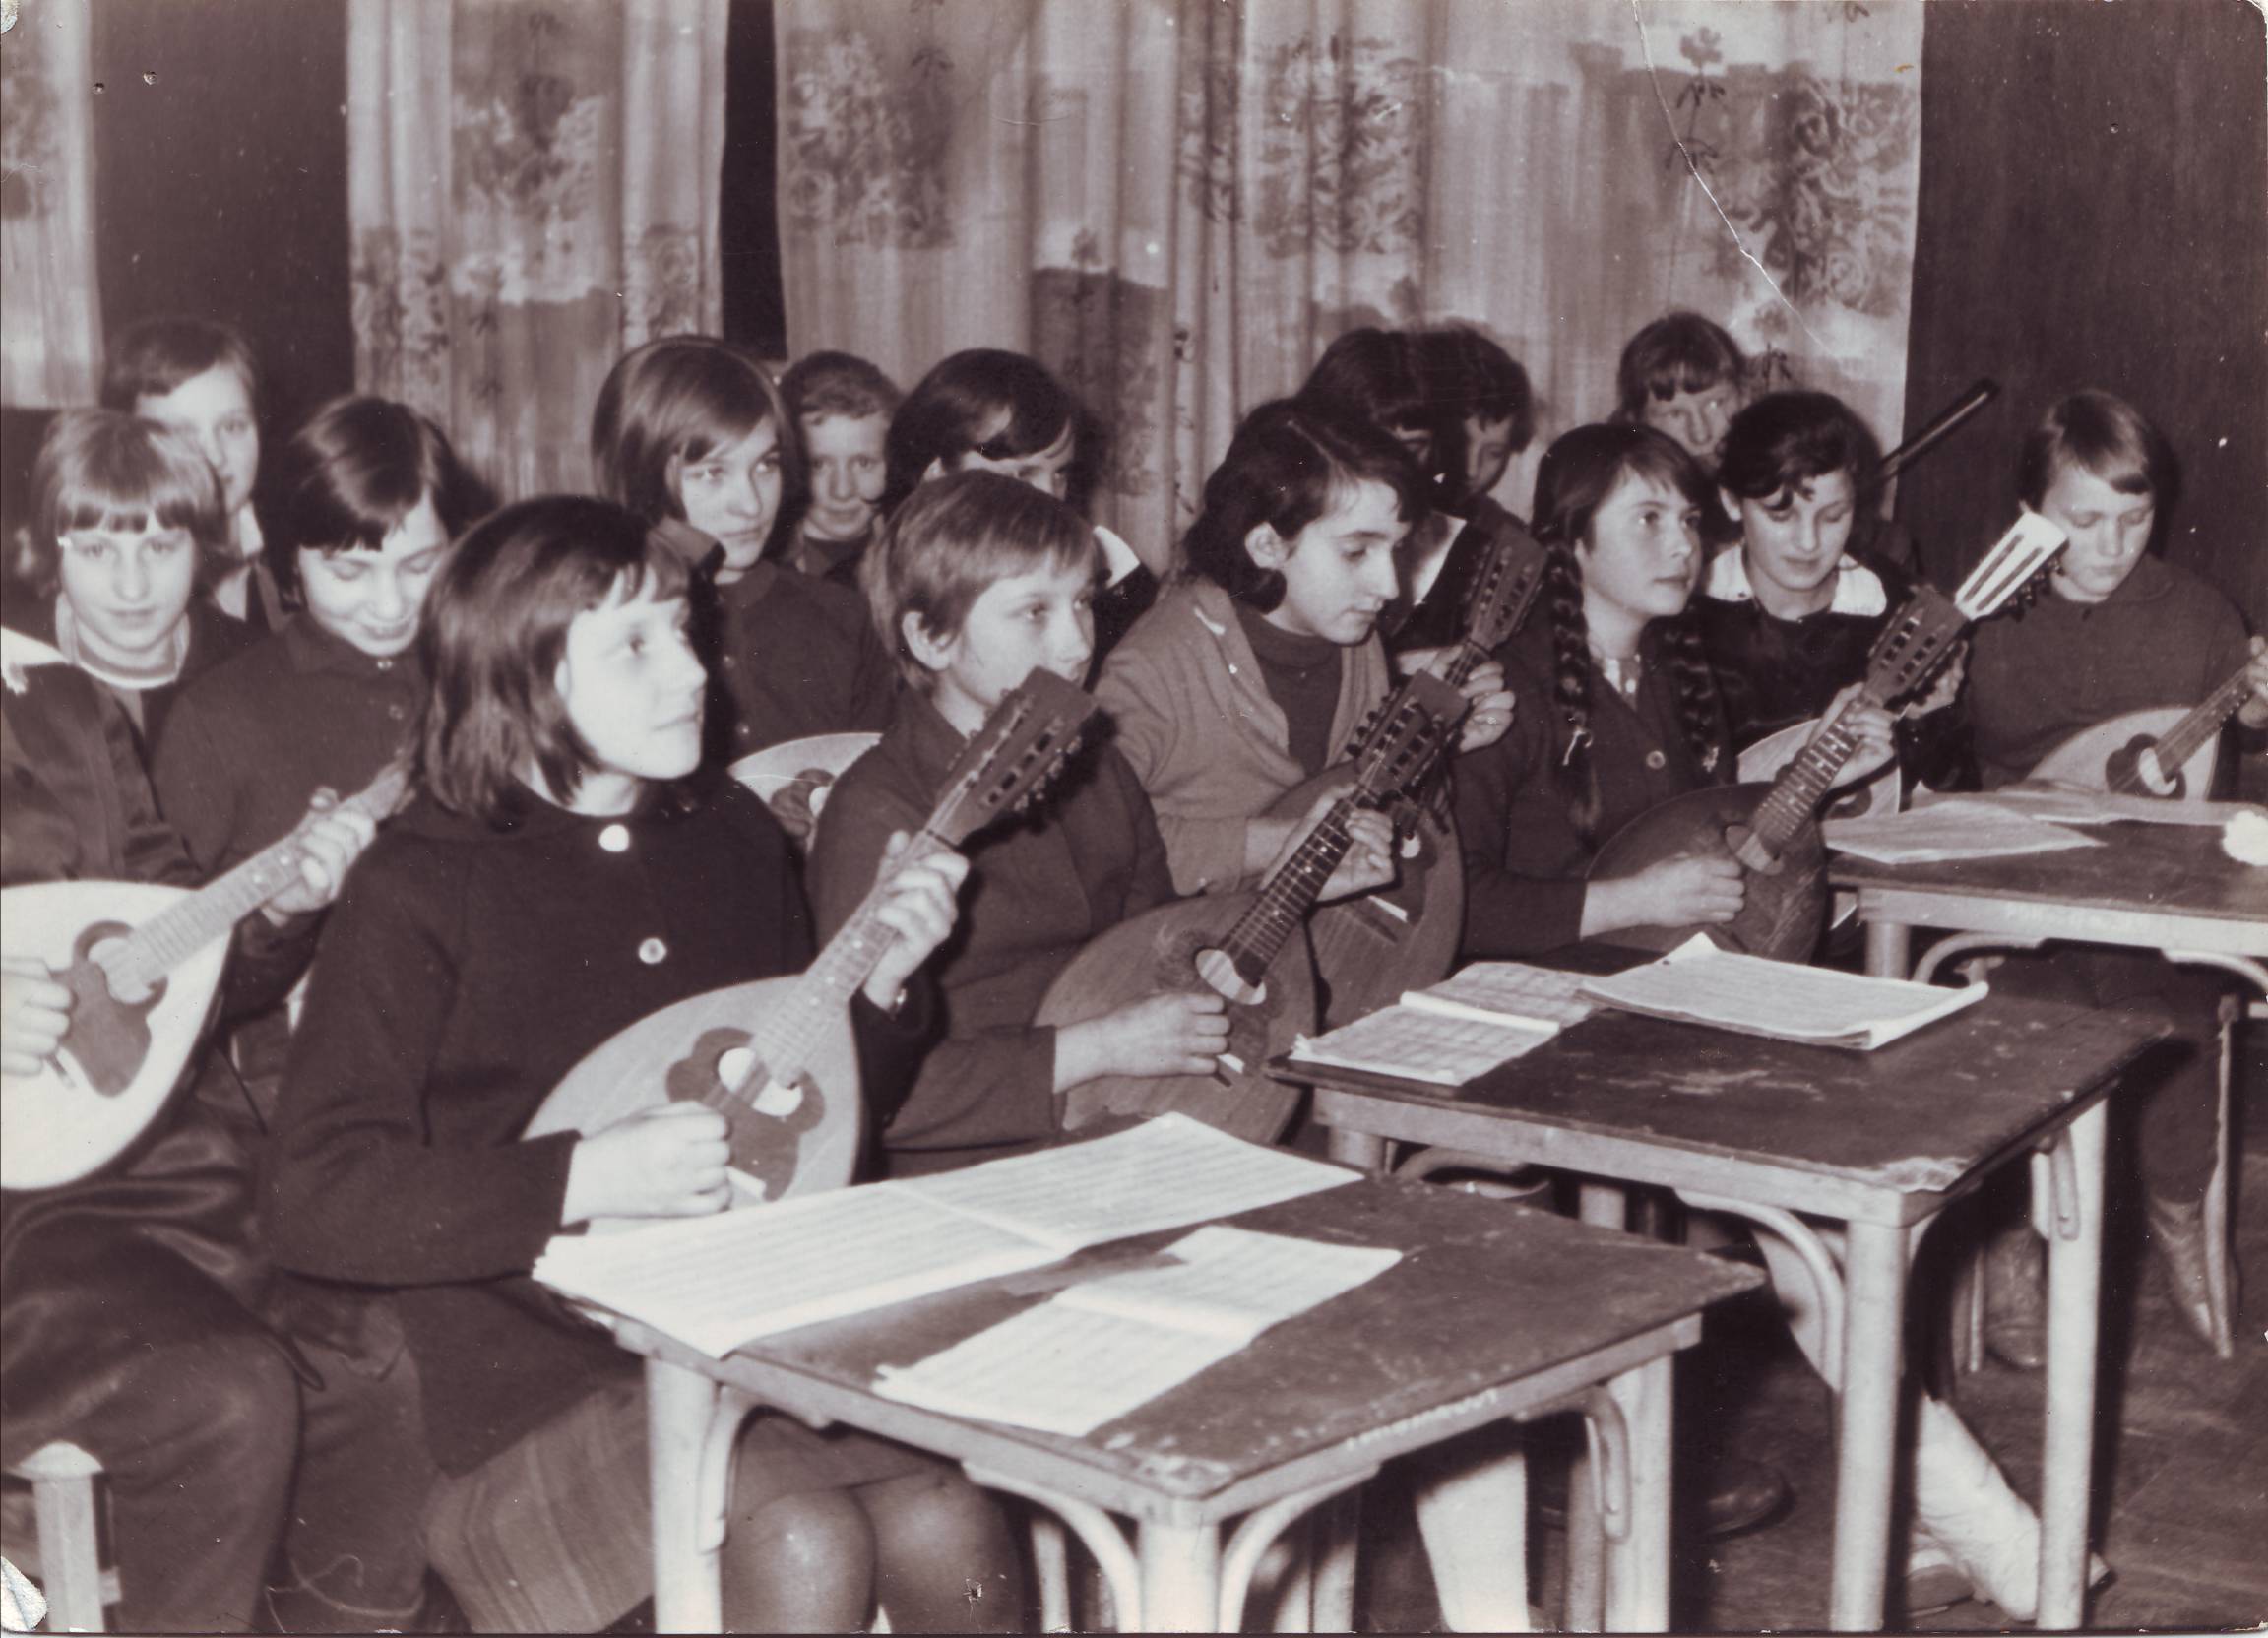 Powiatowy Dom Kultury, nauka gry na mandolinach, lata 60. XX wieku.